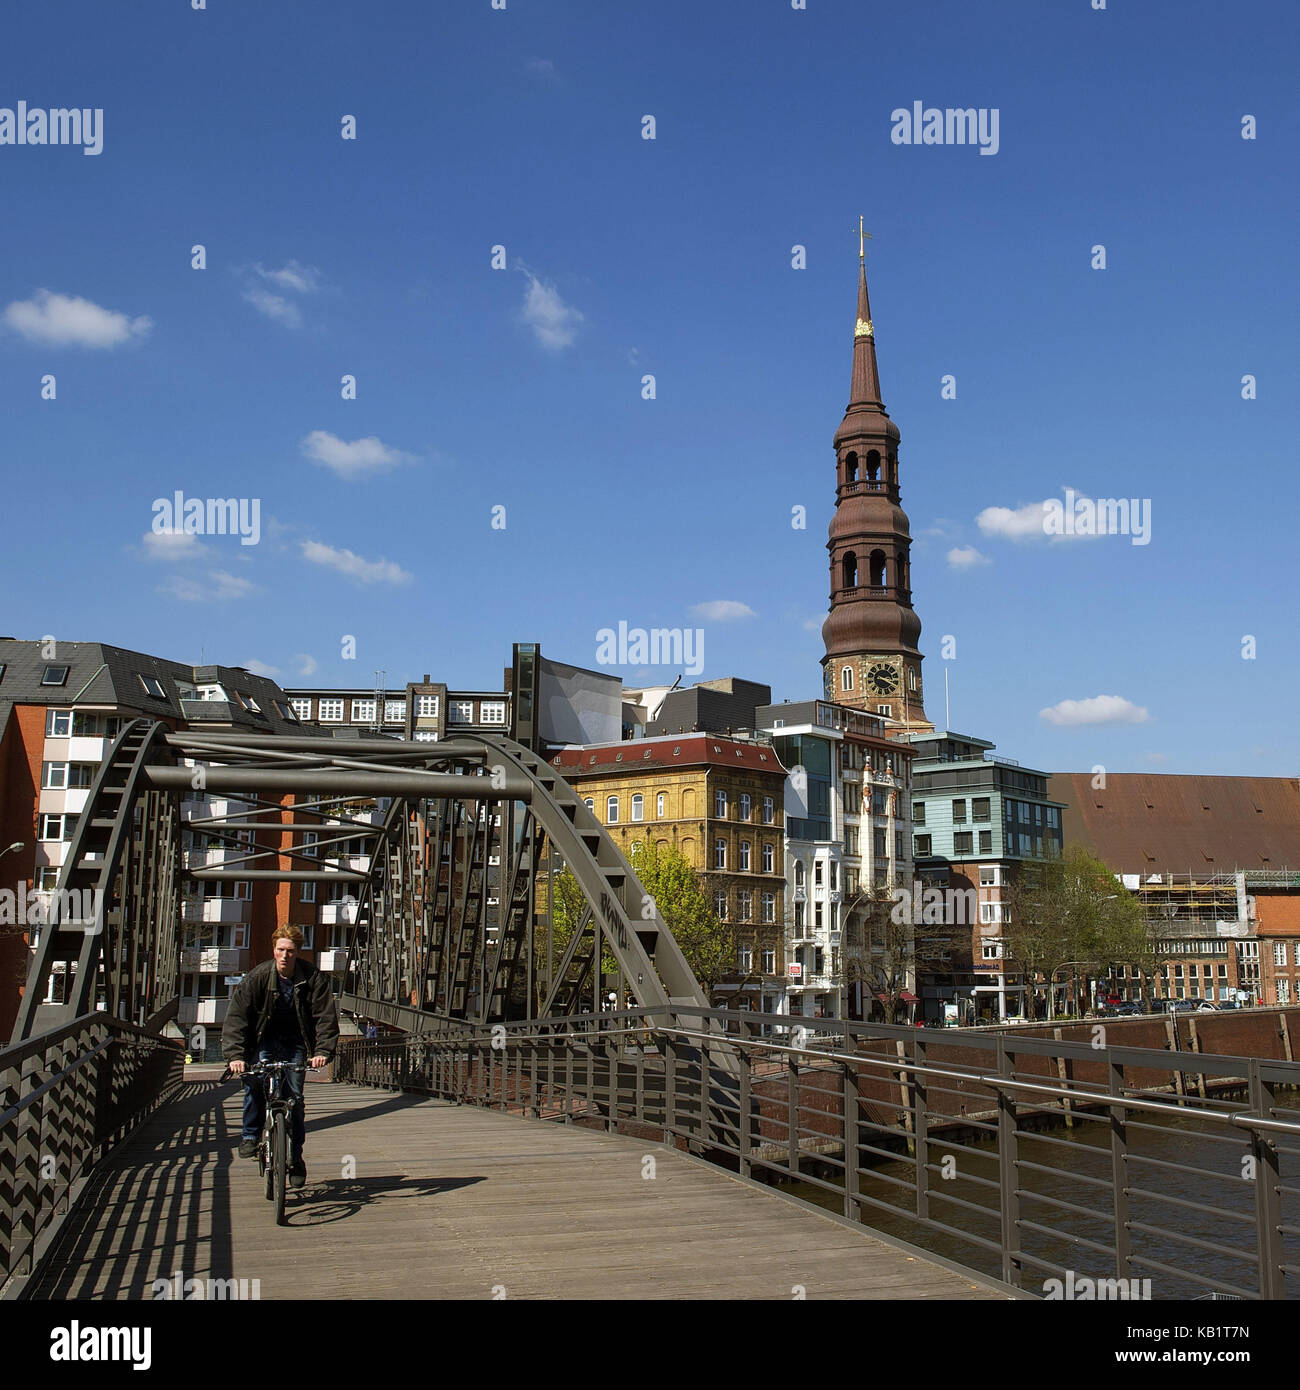 Germania, Amburgo, "capitale verde d'Europa nel 2011", distretto dei magazzini, Chiesa di Santa Caterina, ciclista sul ponte, Foto Stock